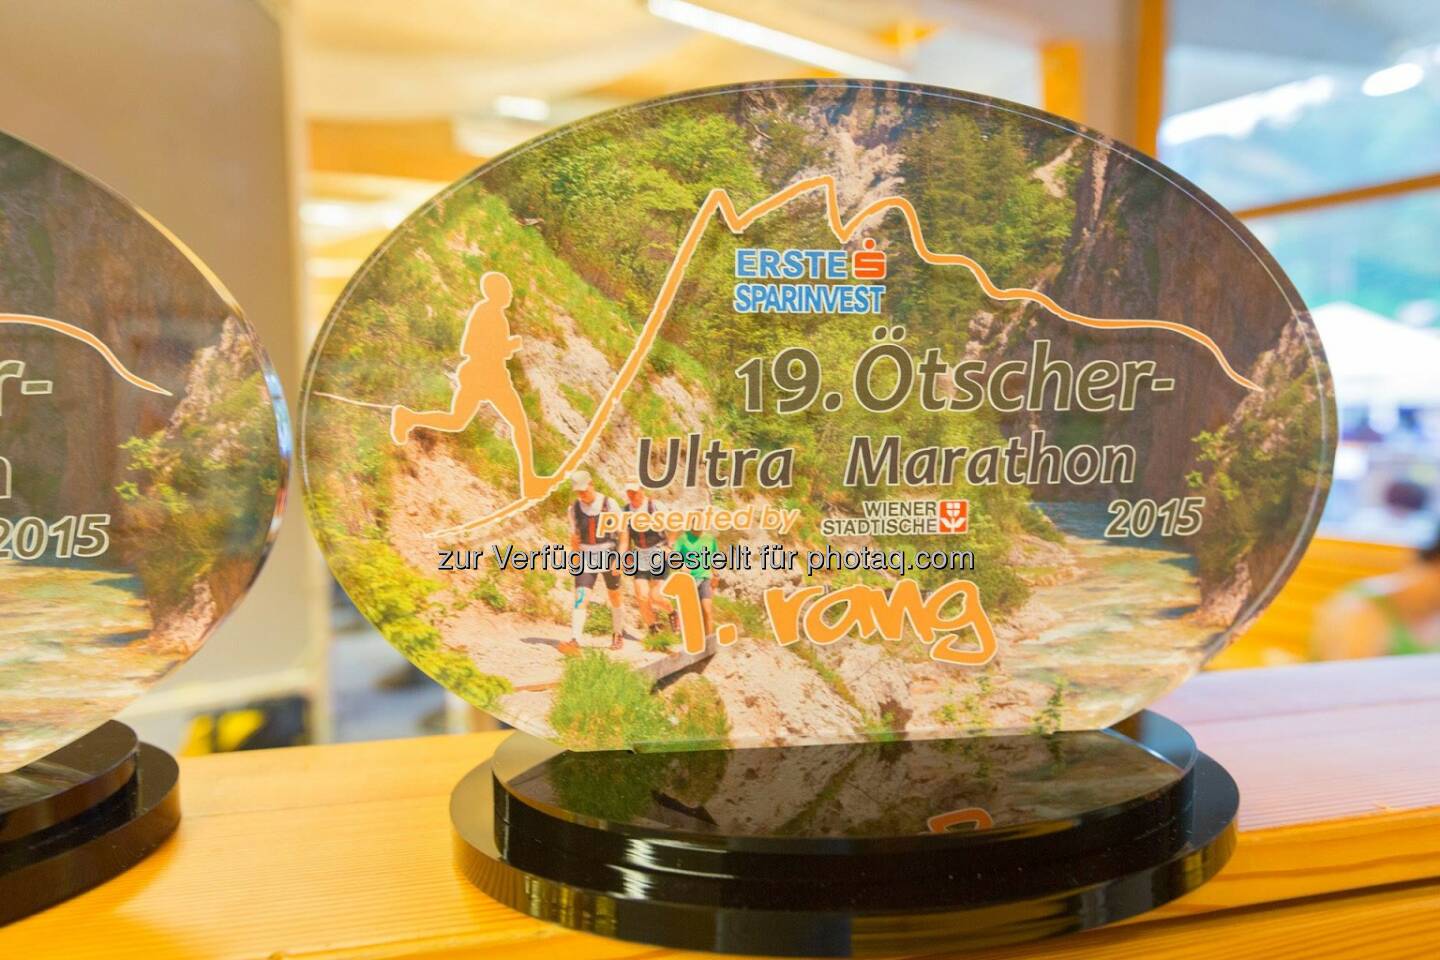 ESPA-Ötscher-Ultra-Marathon 2015